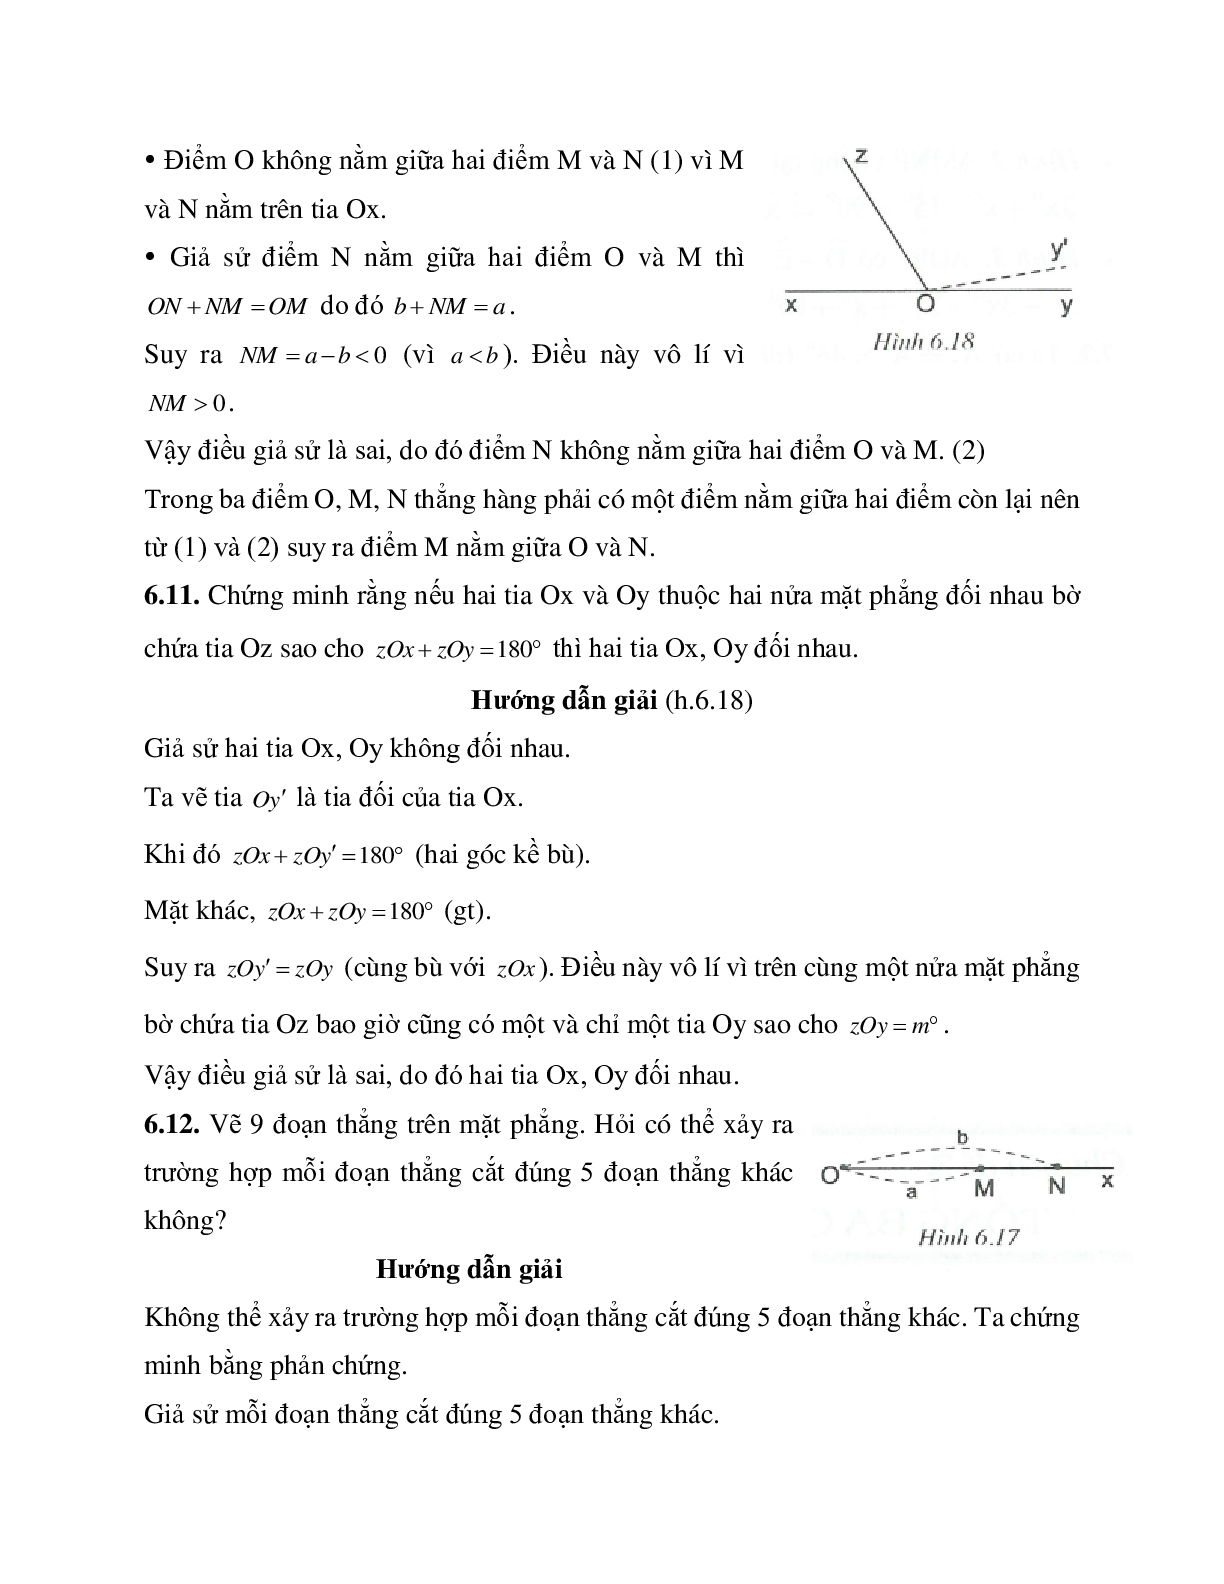 Phương pháp giải và bài tập về Chứng minh bằng phản chứng hình học lớp 7 có lời giải (trang 9)